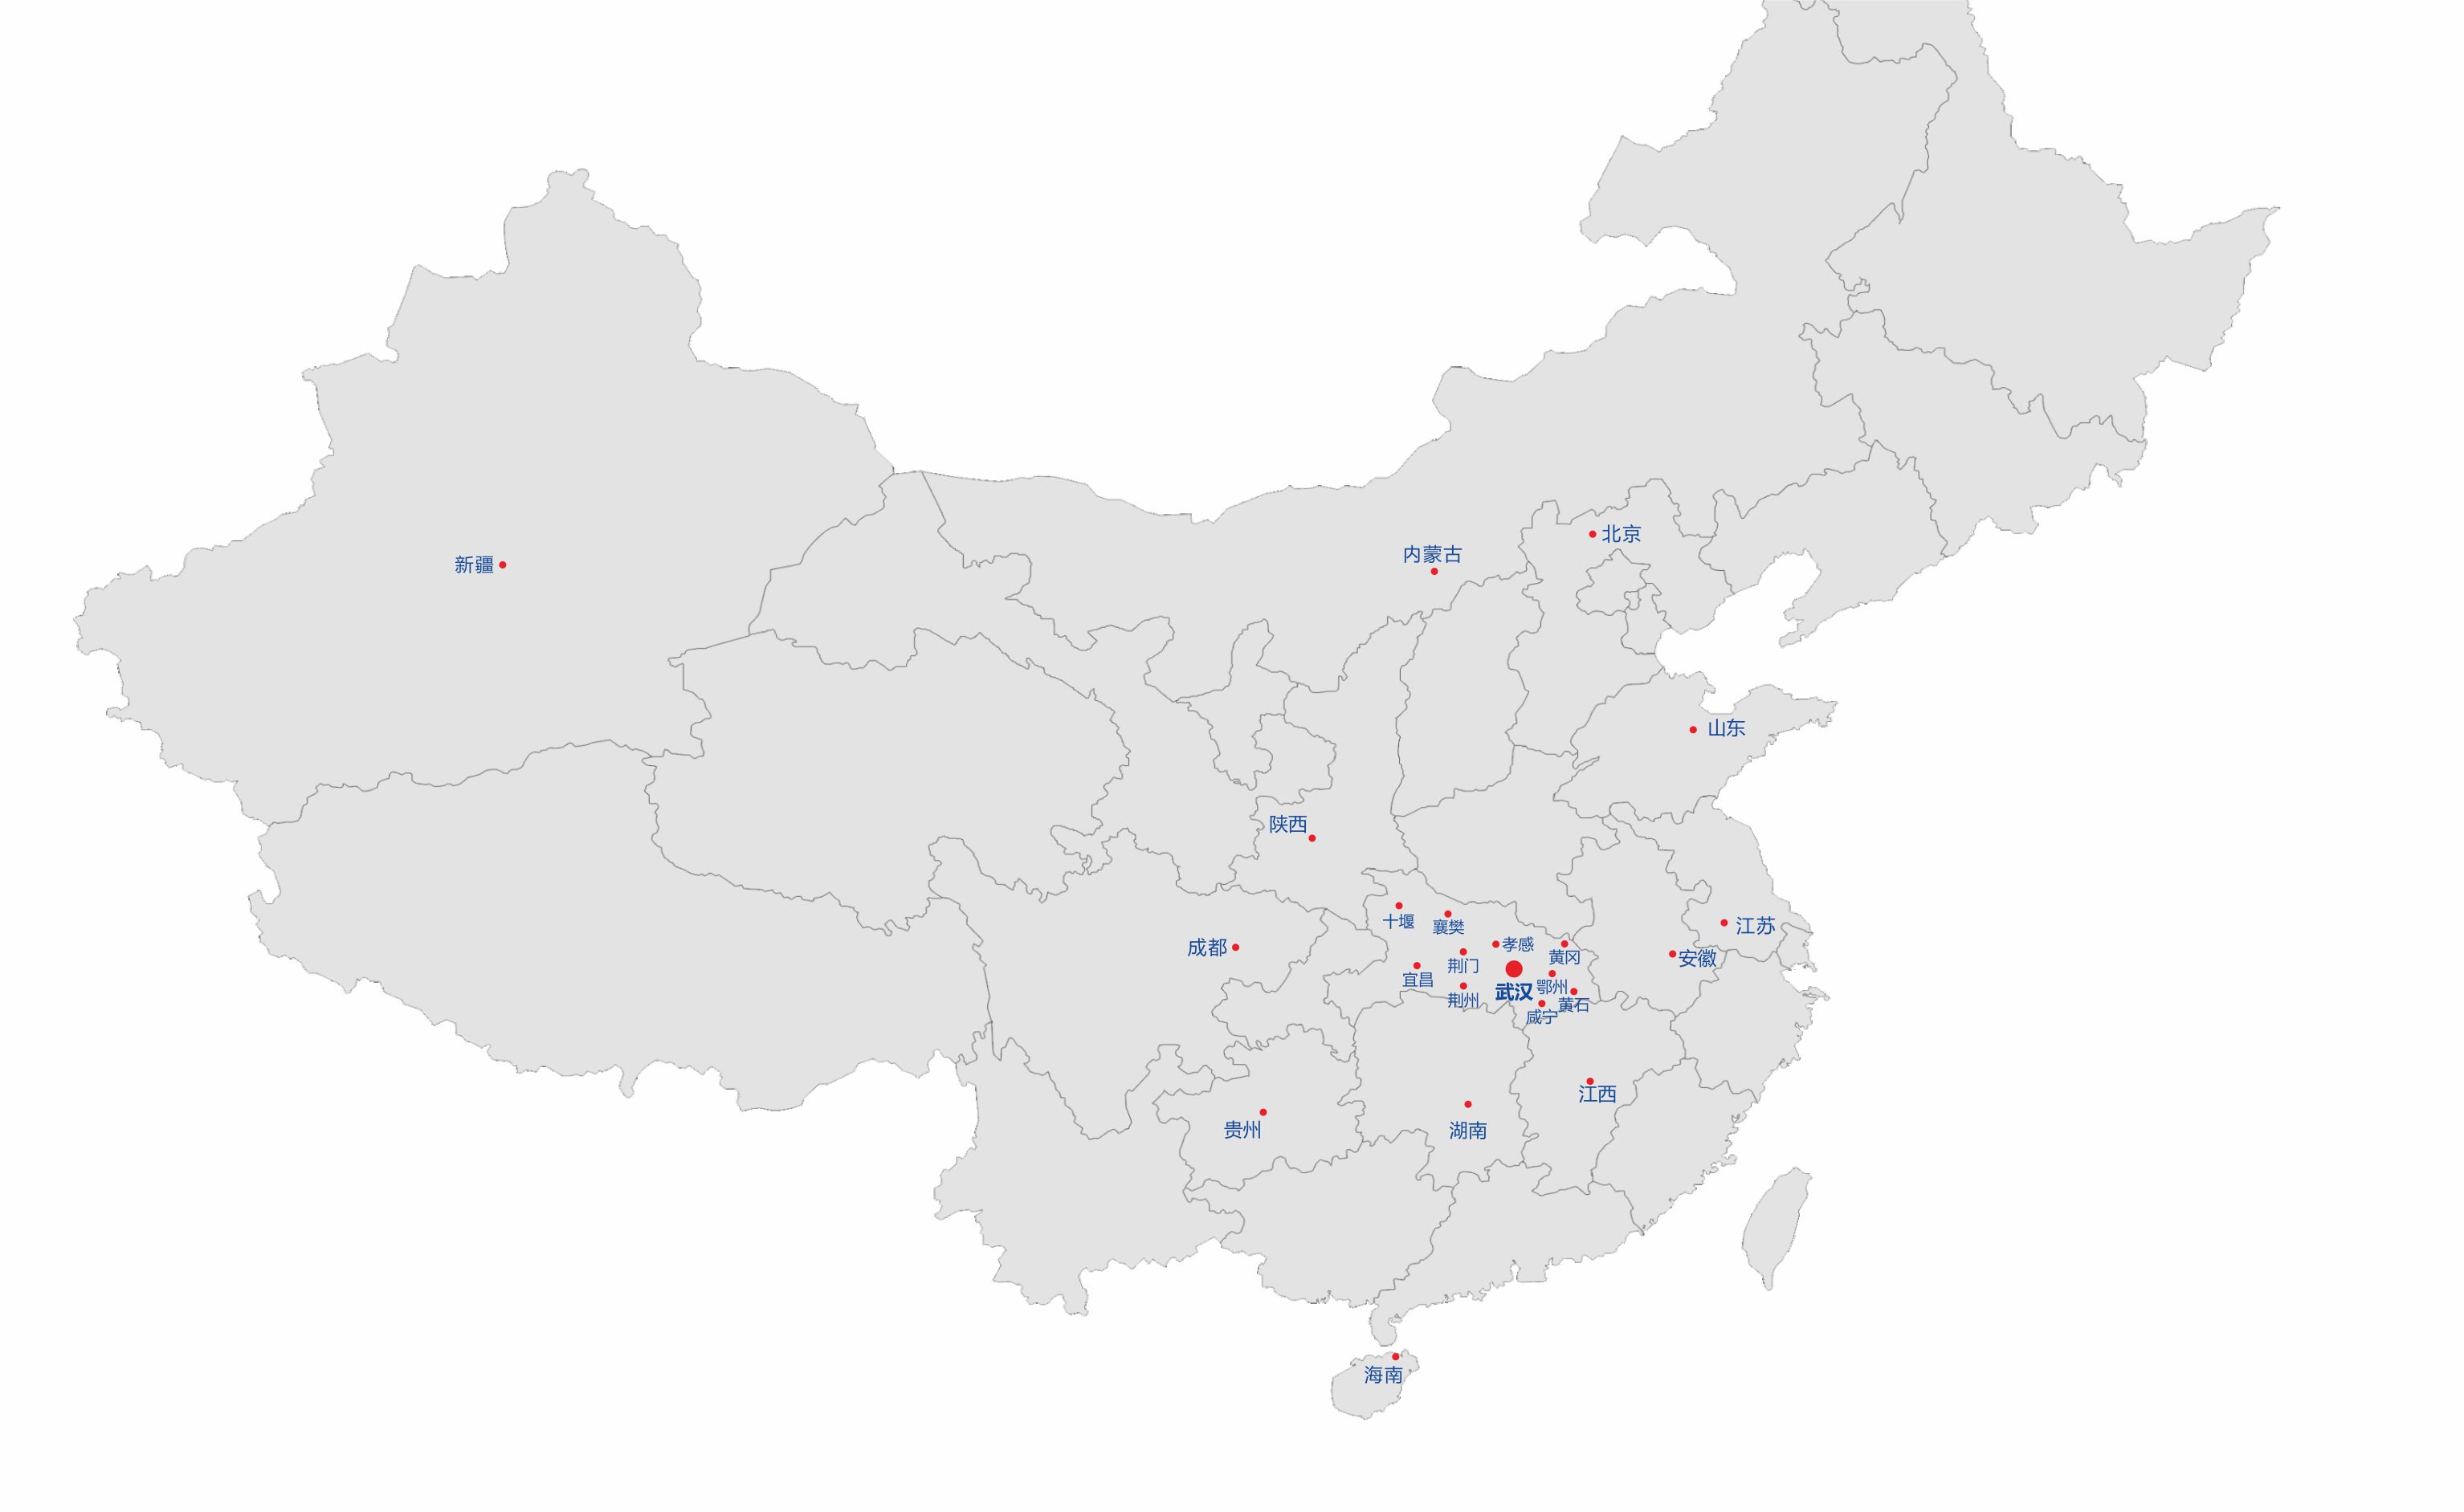 湖北北京k10赛车下载app科技有限公司